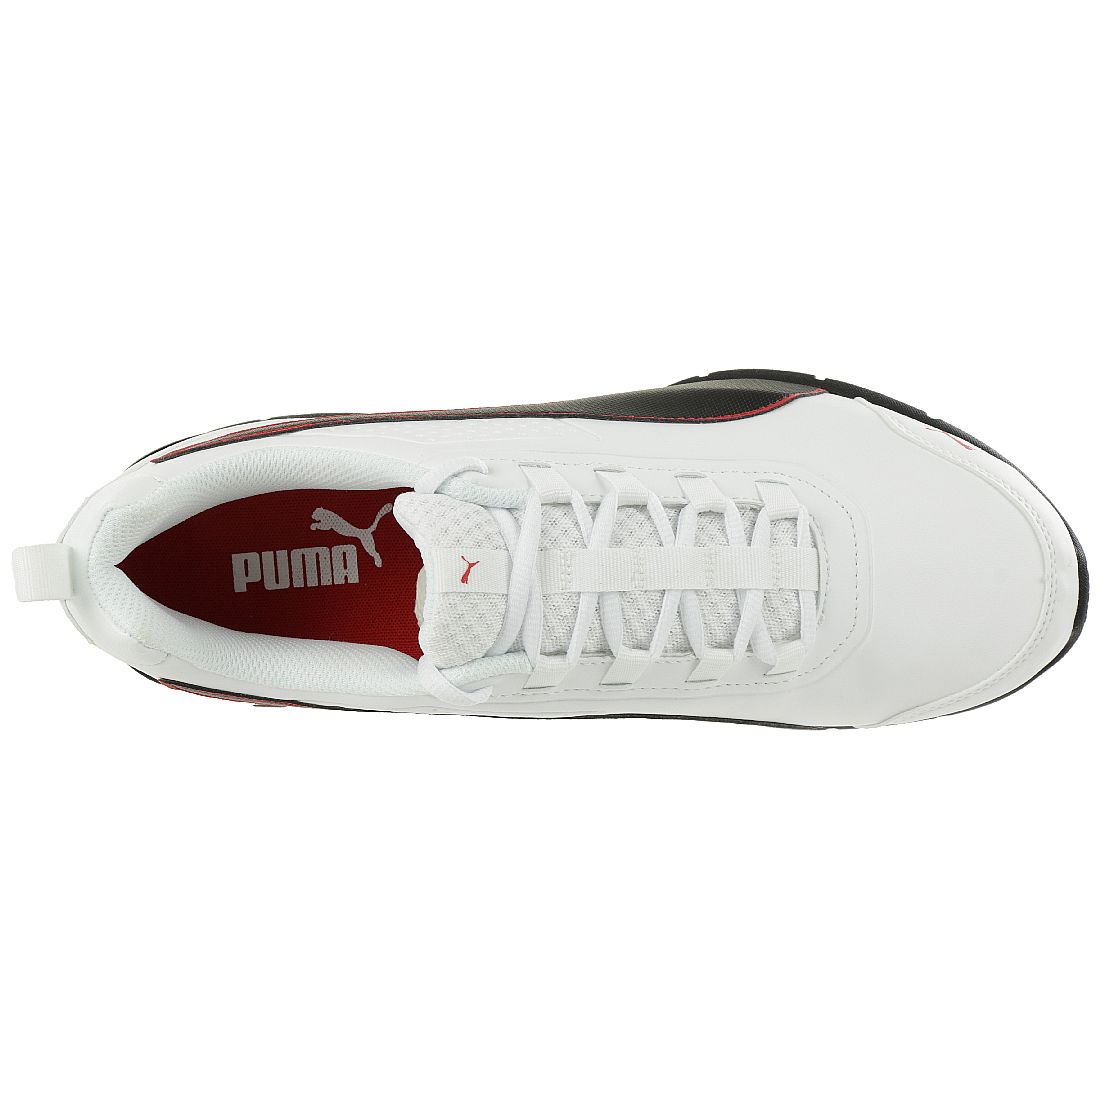 Puma Leader VT SL Unisex Sneaker Schuhe Laufschuhe 365291 01